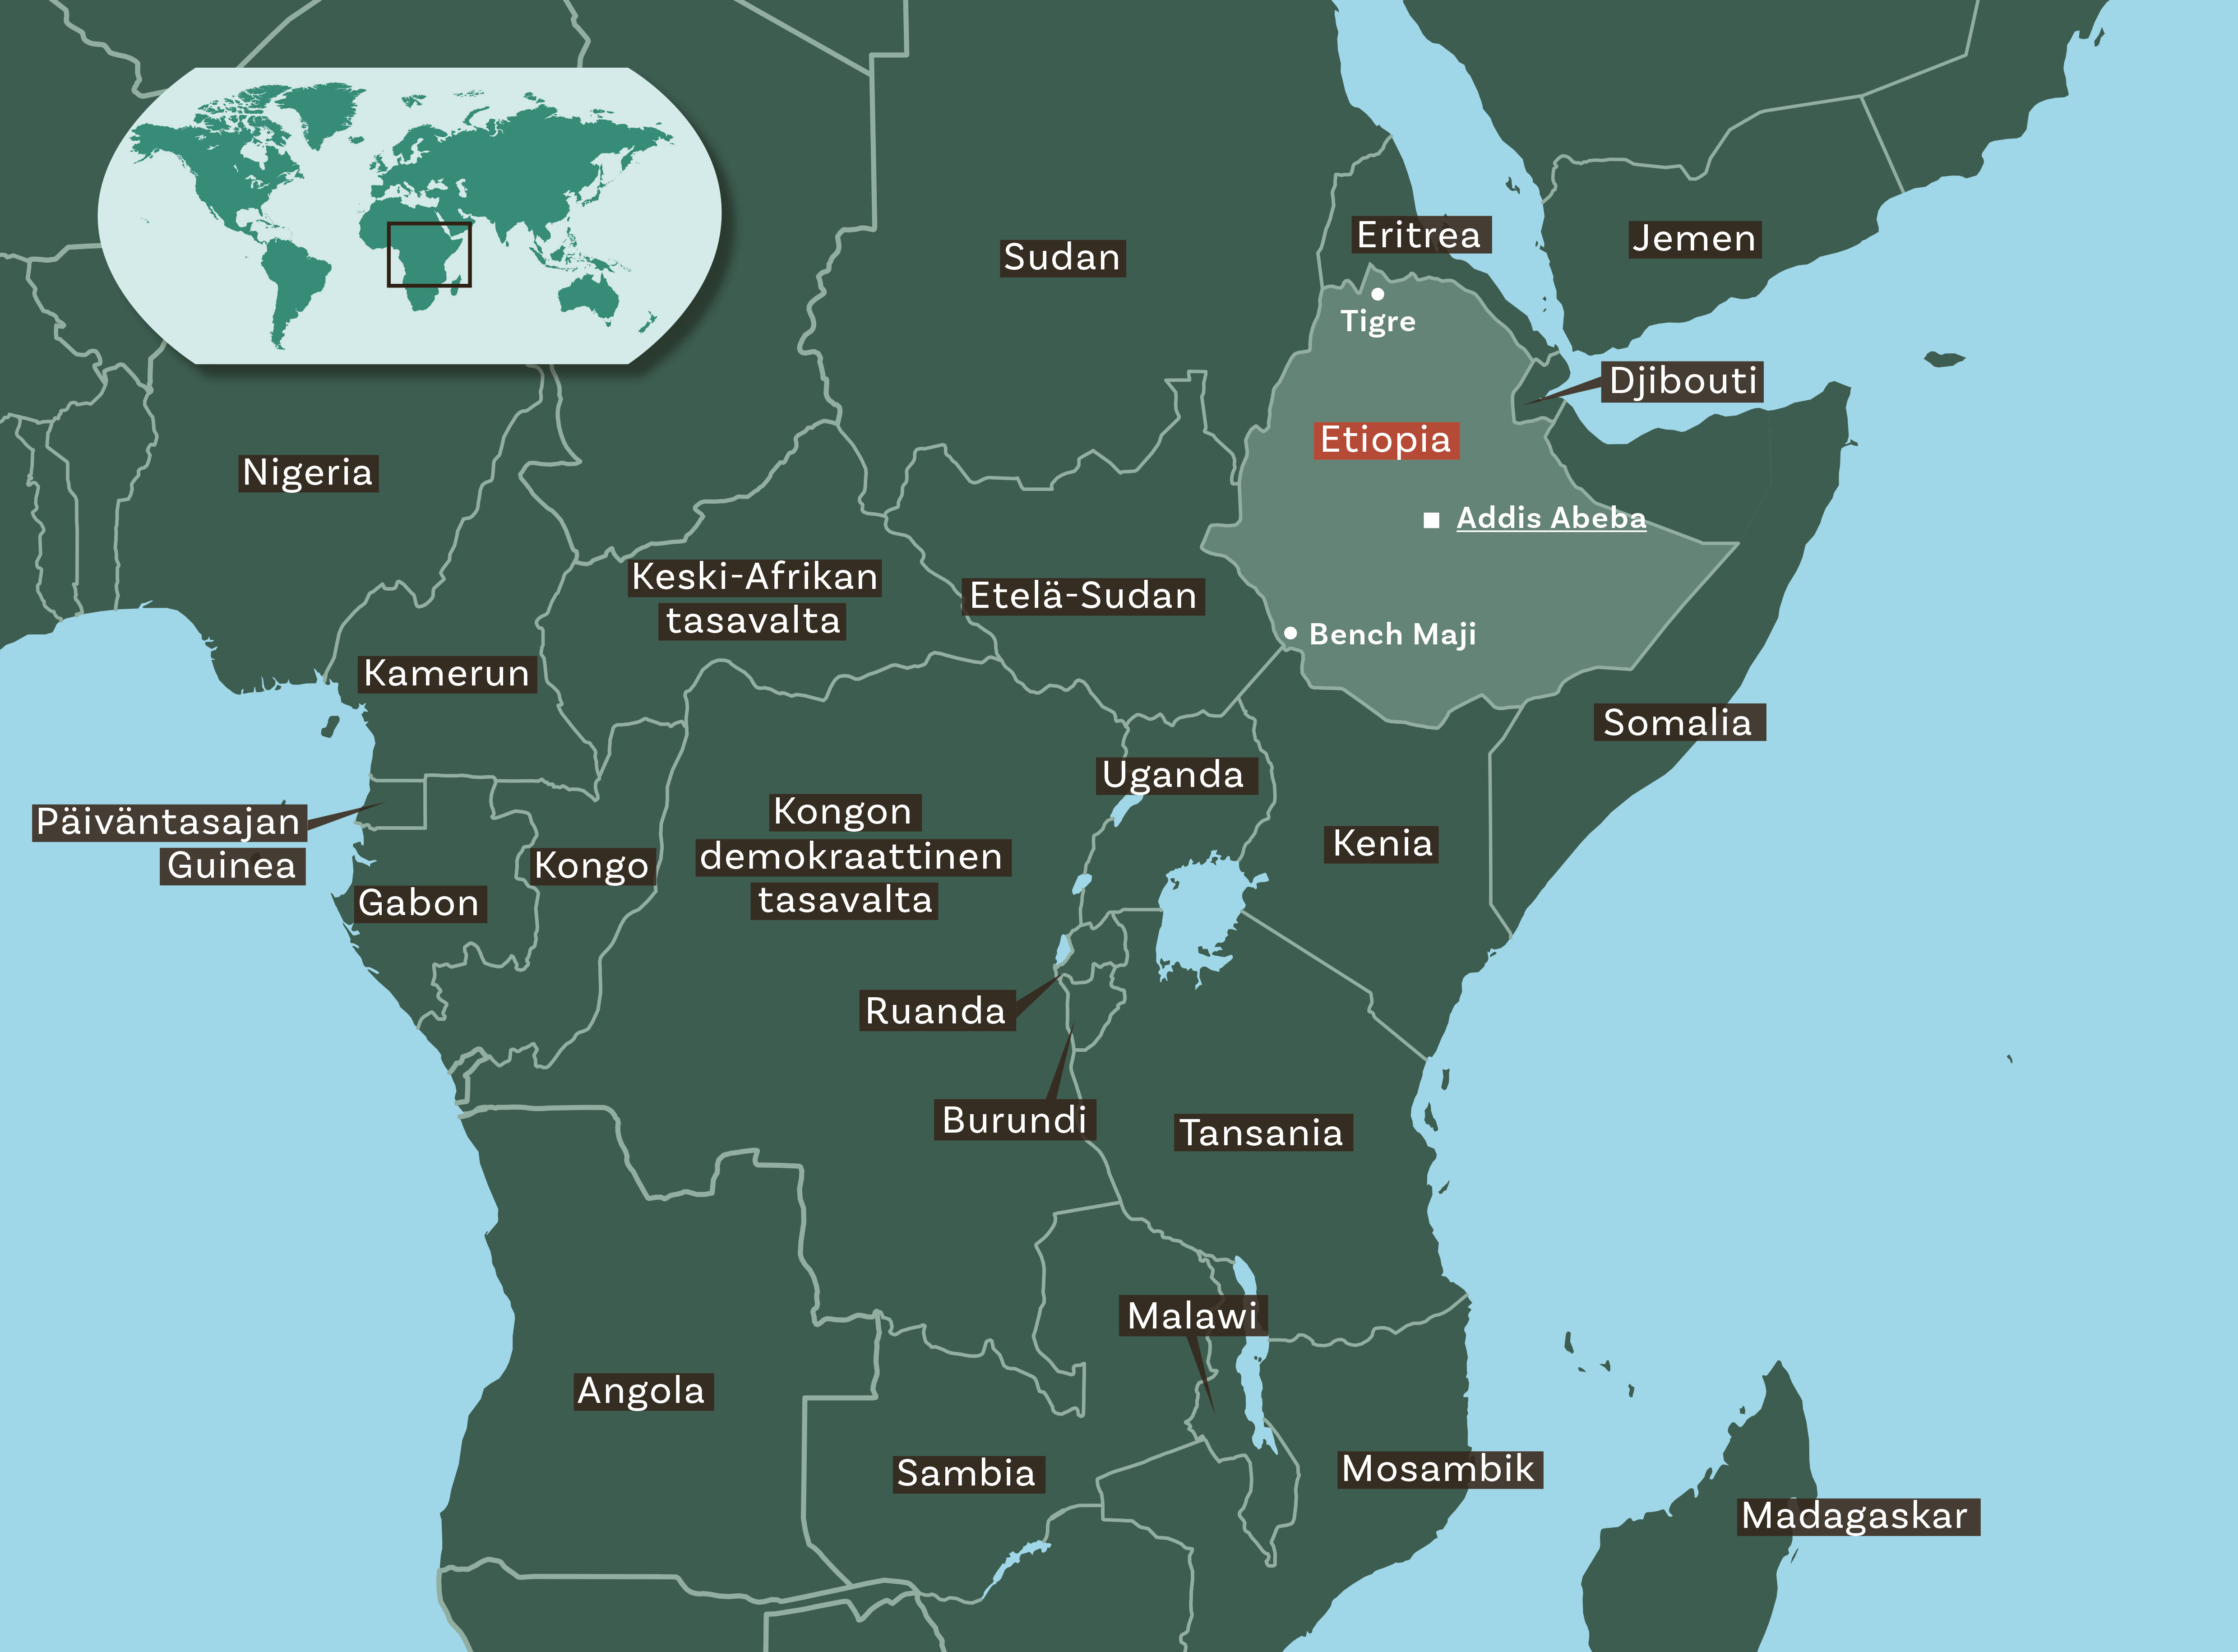 Kartassa ovat Etiopian naapurivaltiot: Dijibouti, Eritrea, Sudan, Etelä-Sudan, Kenia ja Somalia. Vihreässä kartassa näkyy myös muita Afrikan valtioita.